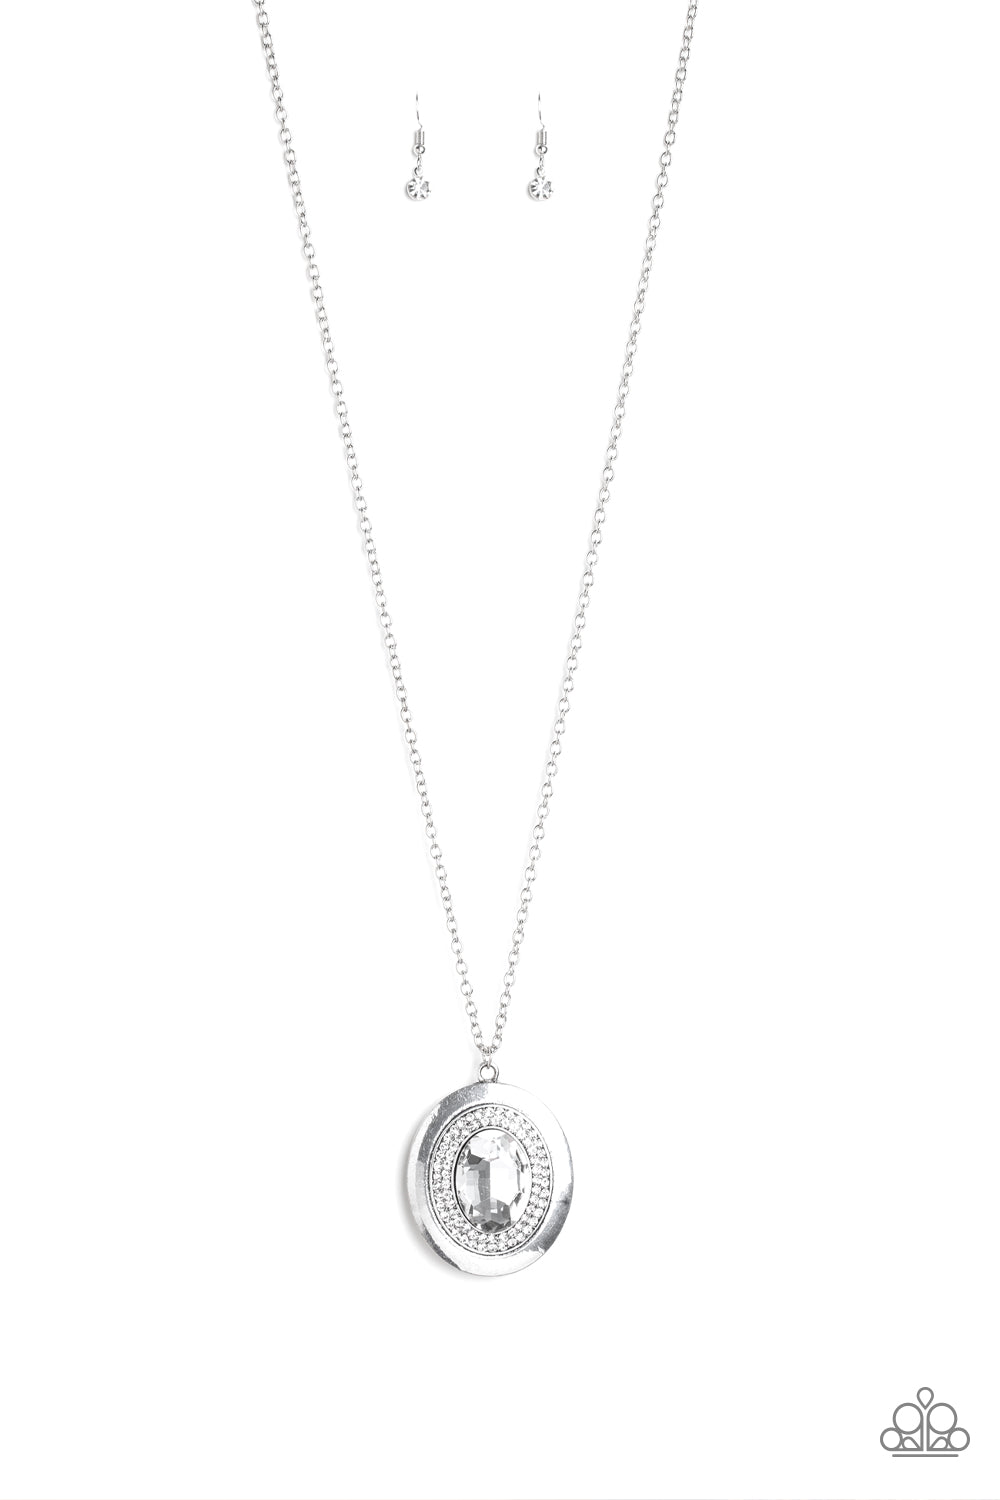 Castle Couture - White gem necklace set